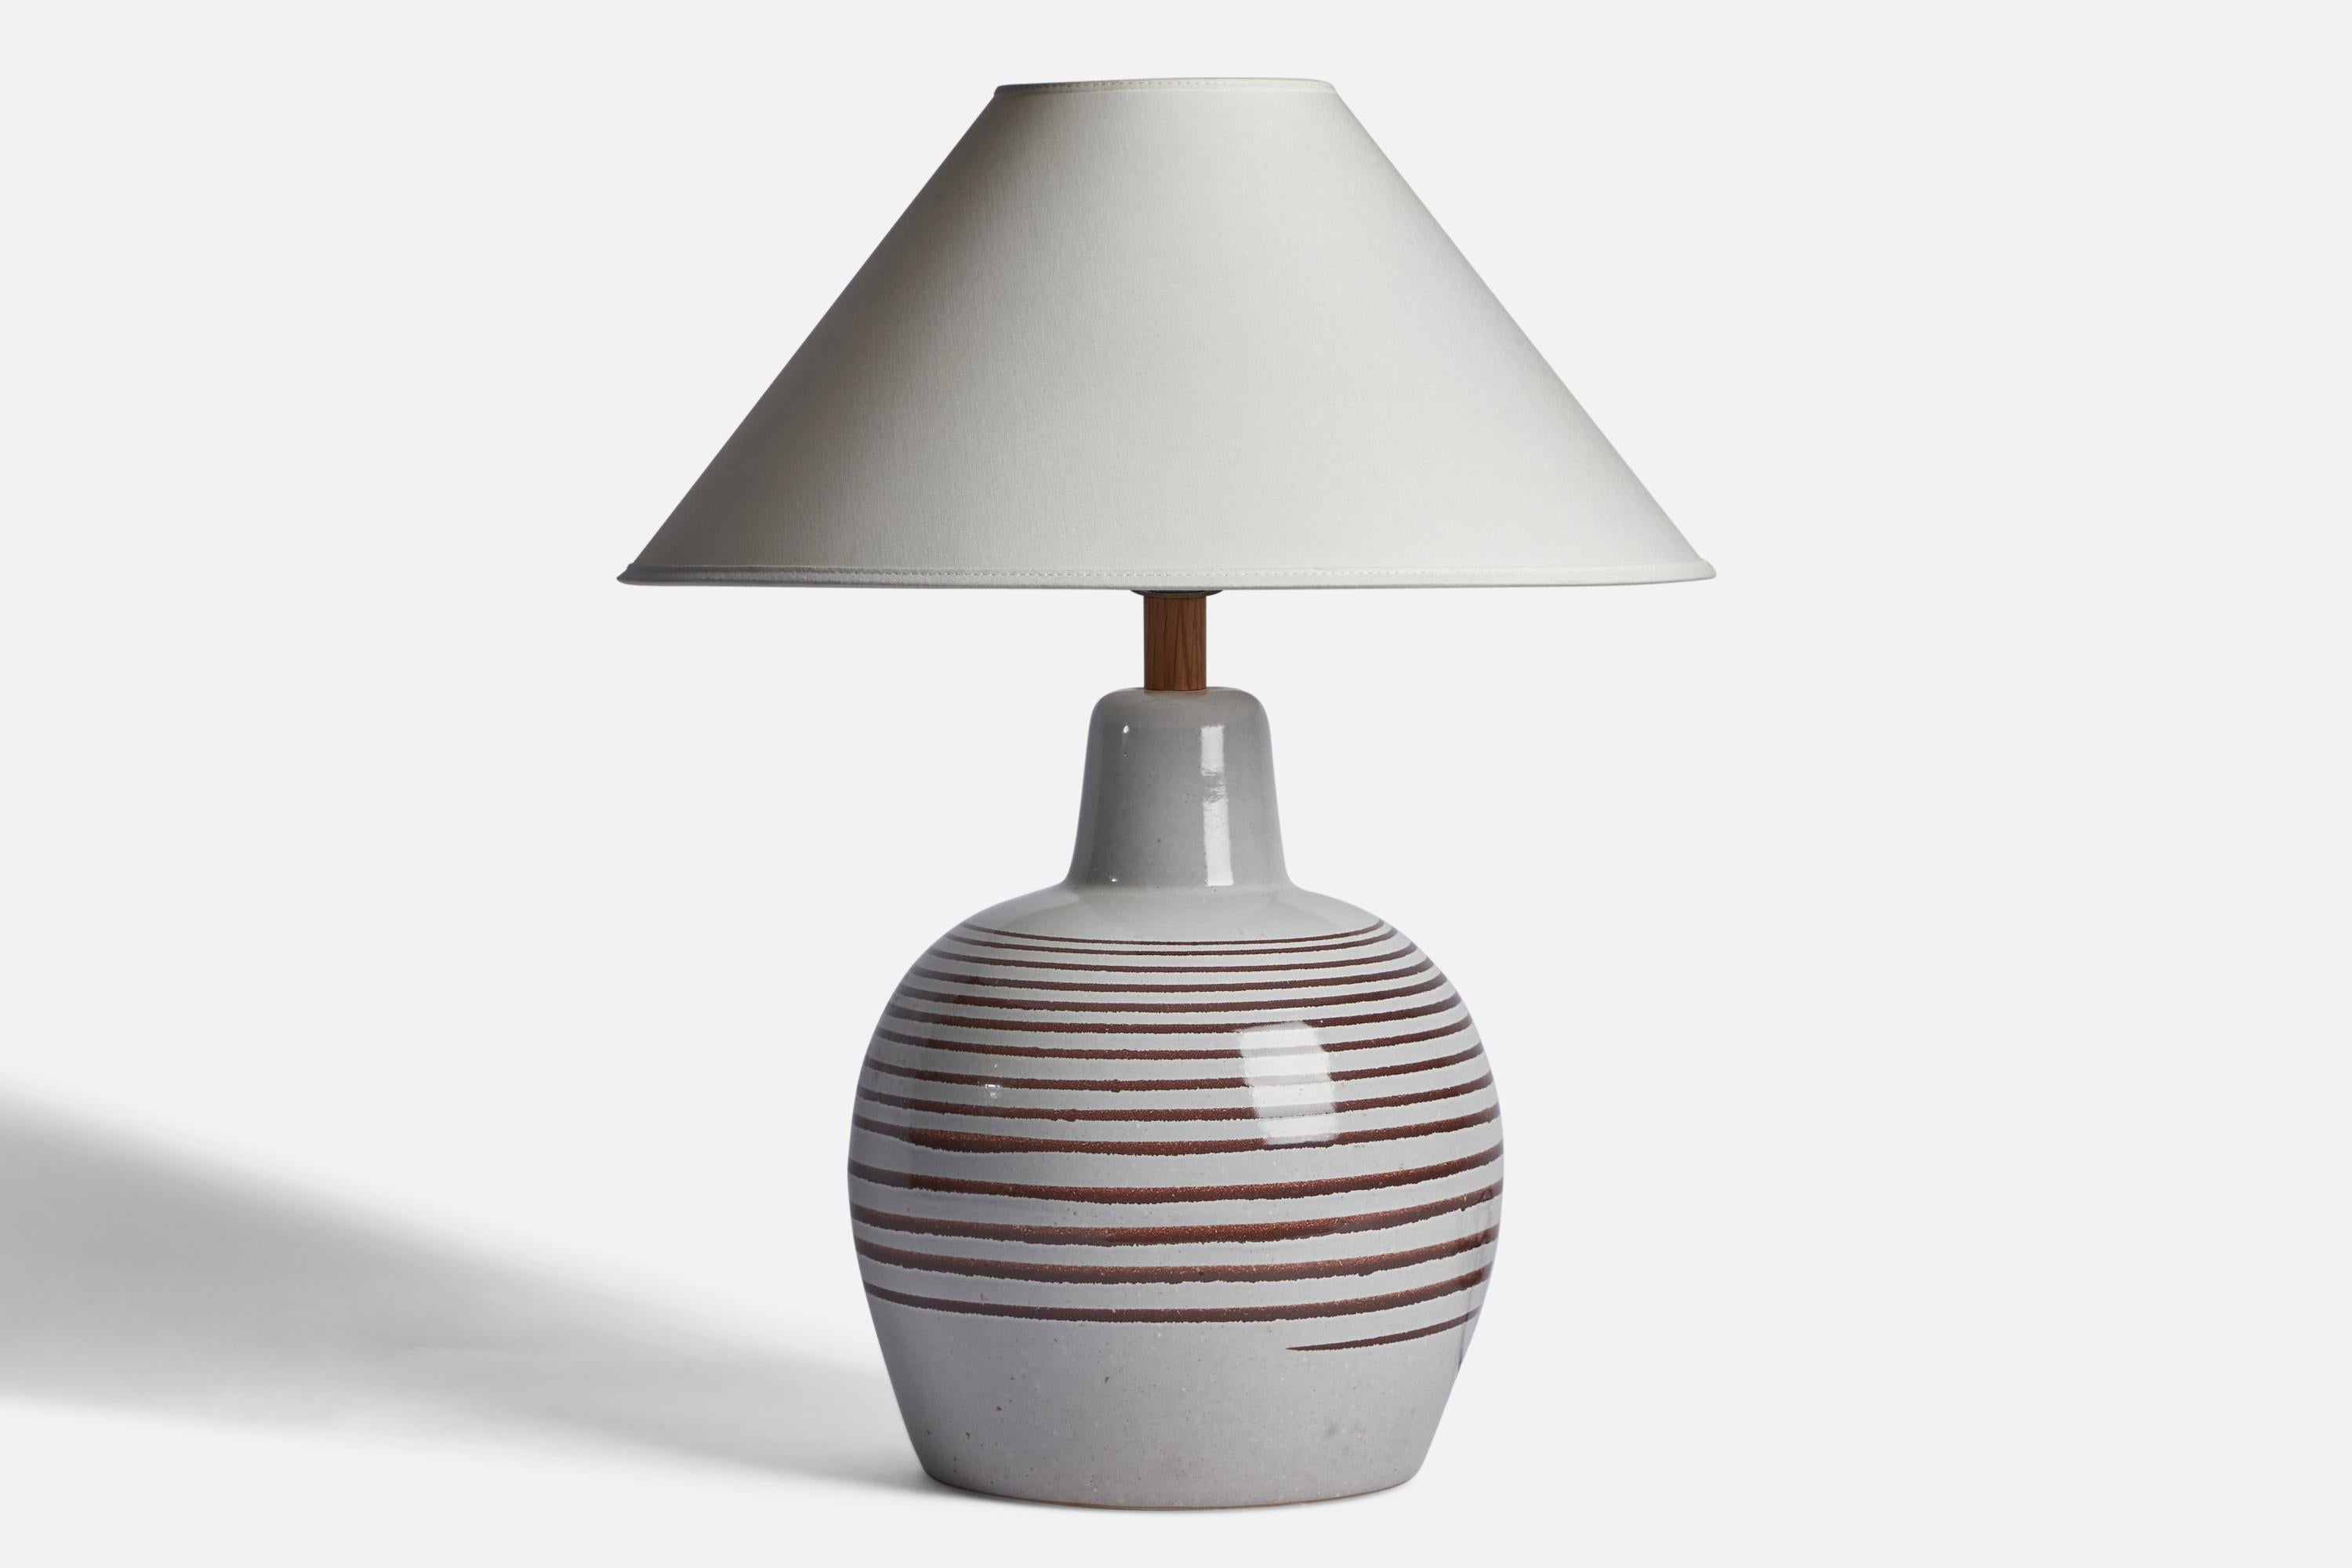 Lampe de table en céramique et noyer blanc cassé et émaillé brun, conçue par Jane & Gordon Martz et produite par Marshall Studios, États-Unis, années 1960.

Dimensions de la lampe (pouces) : 16.15